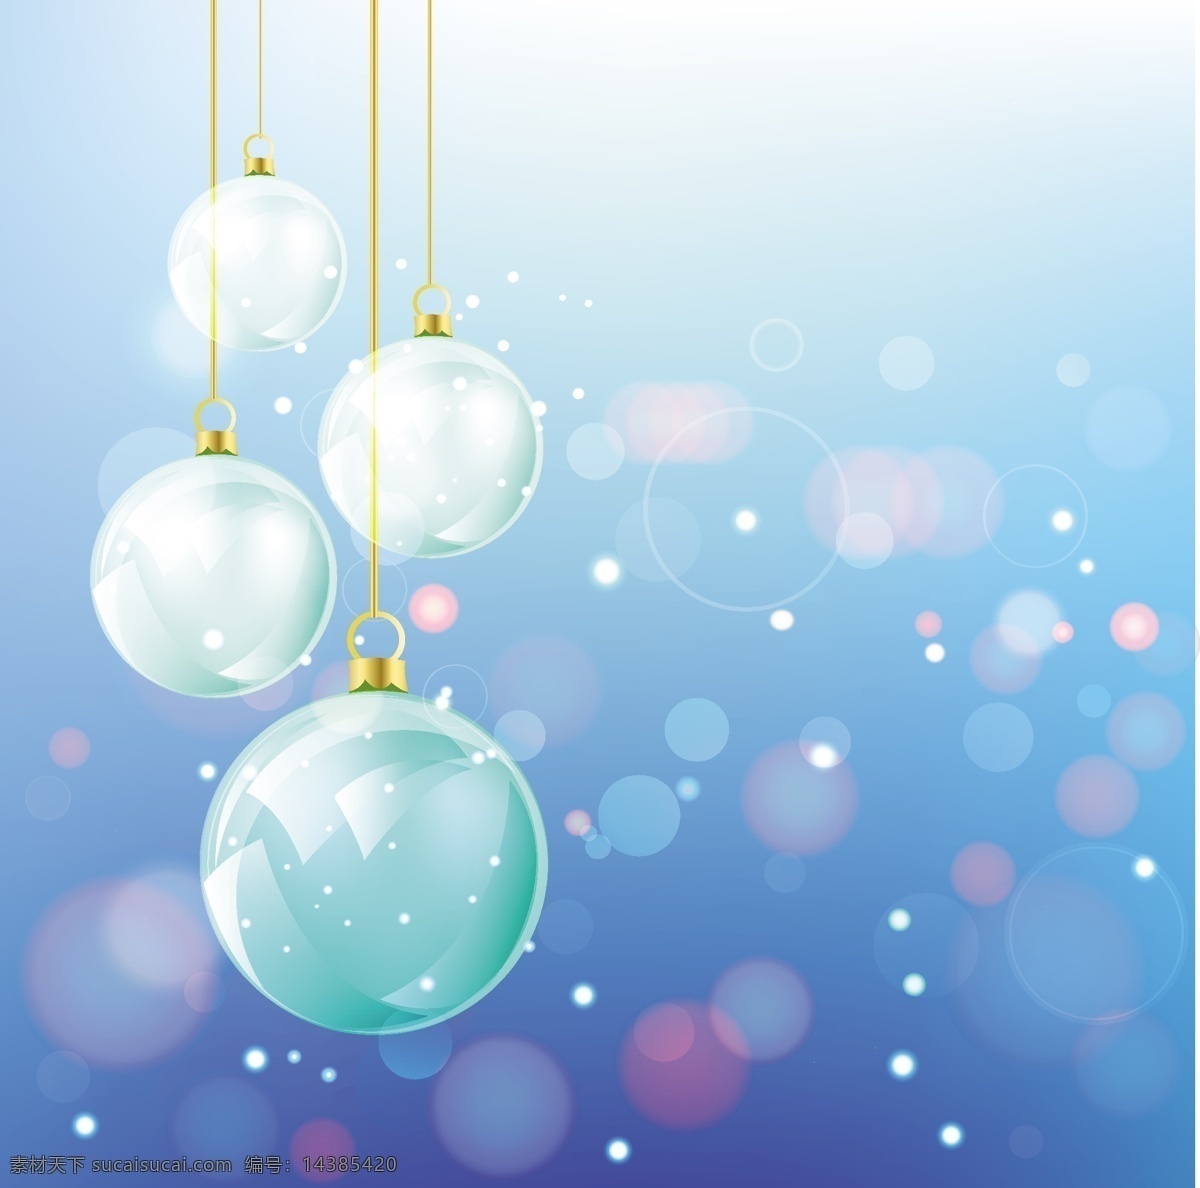 蓝色 光圈 矢量 球 吊球 蓝色光圈 蓝色背景 圣诞背景 矢量素材